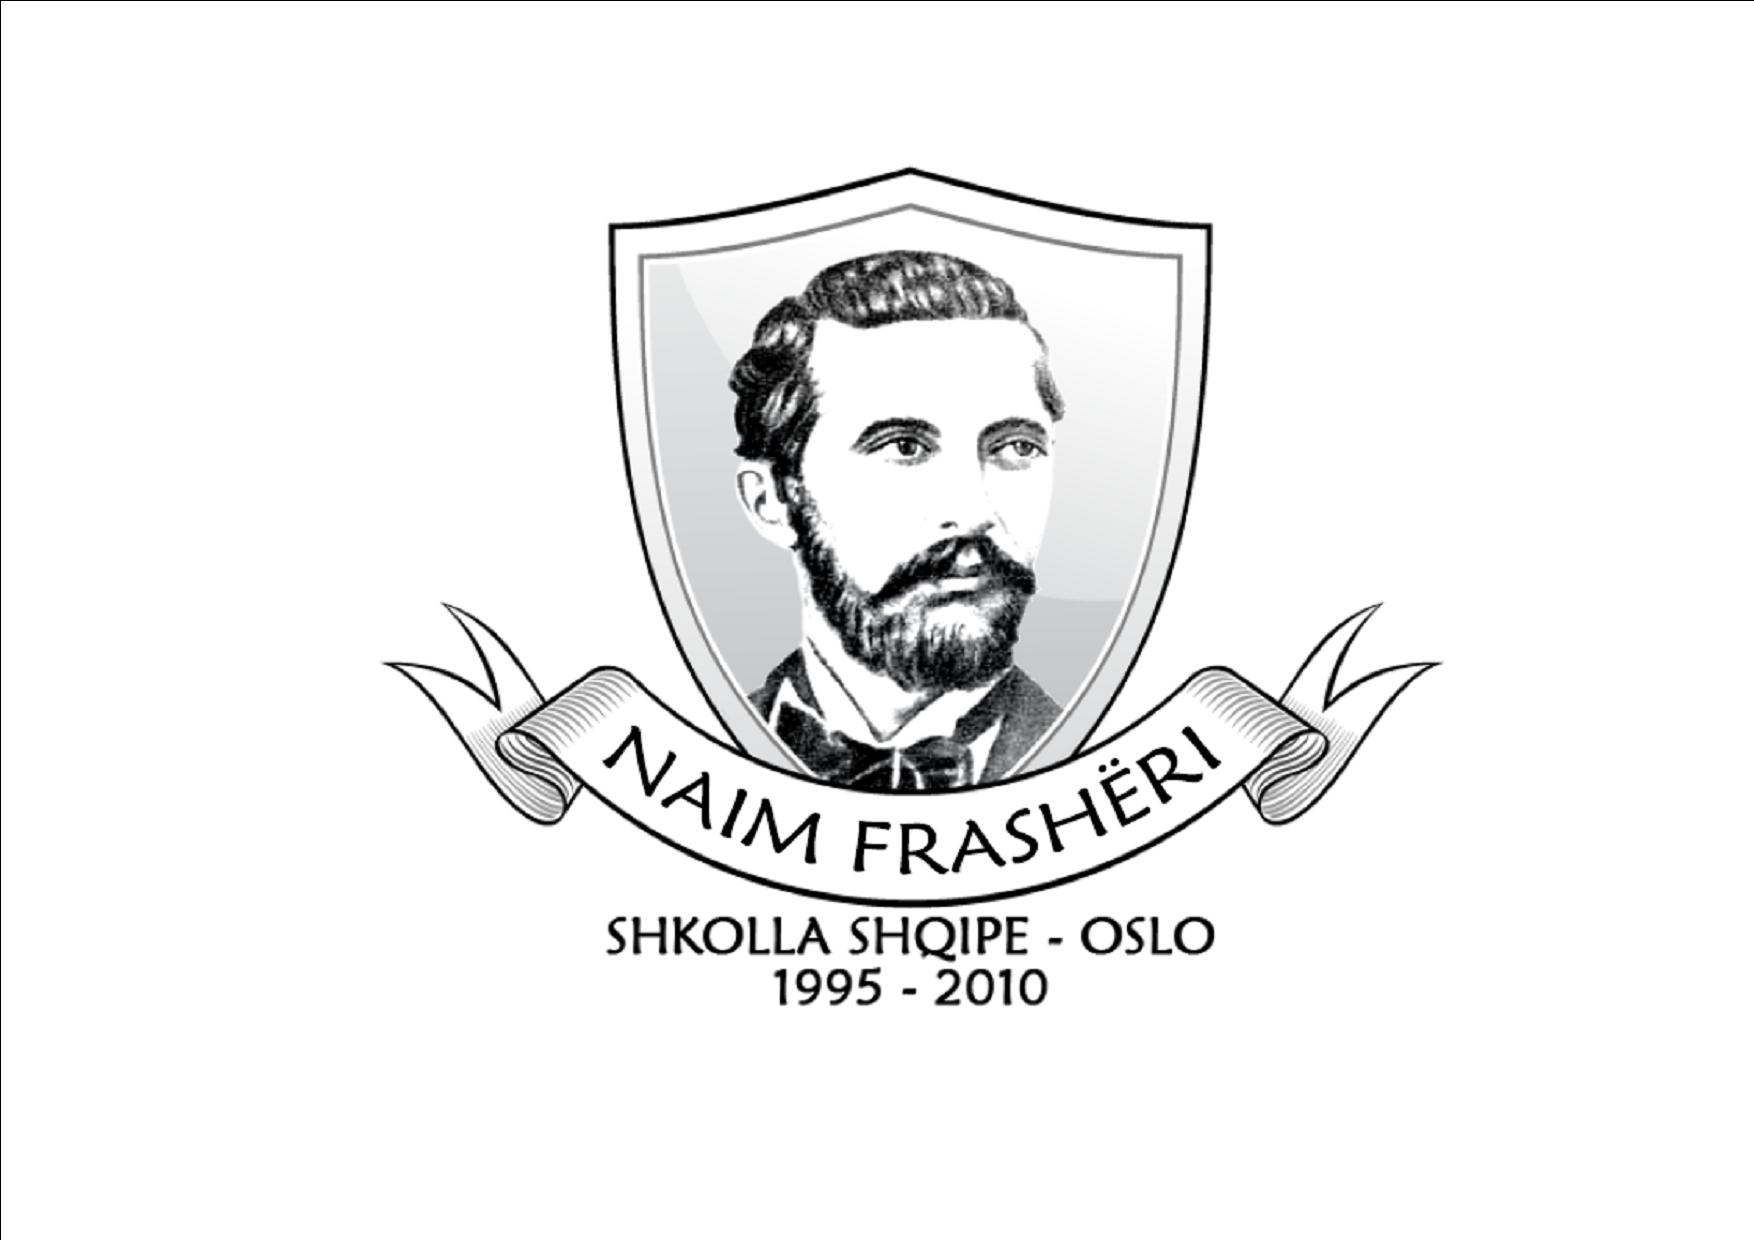 Shkolla shqipe "Naim Frashëri" në Oslo, shënoi ditën e mësuesit njikohësisht edhe 15 vjetorin e egzistimit të saj